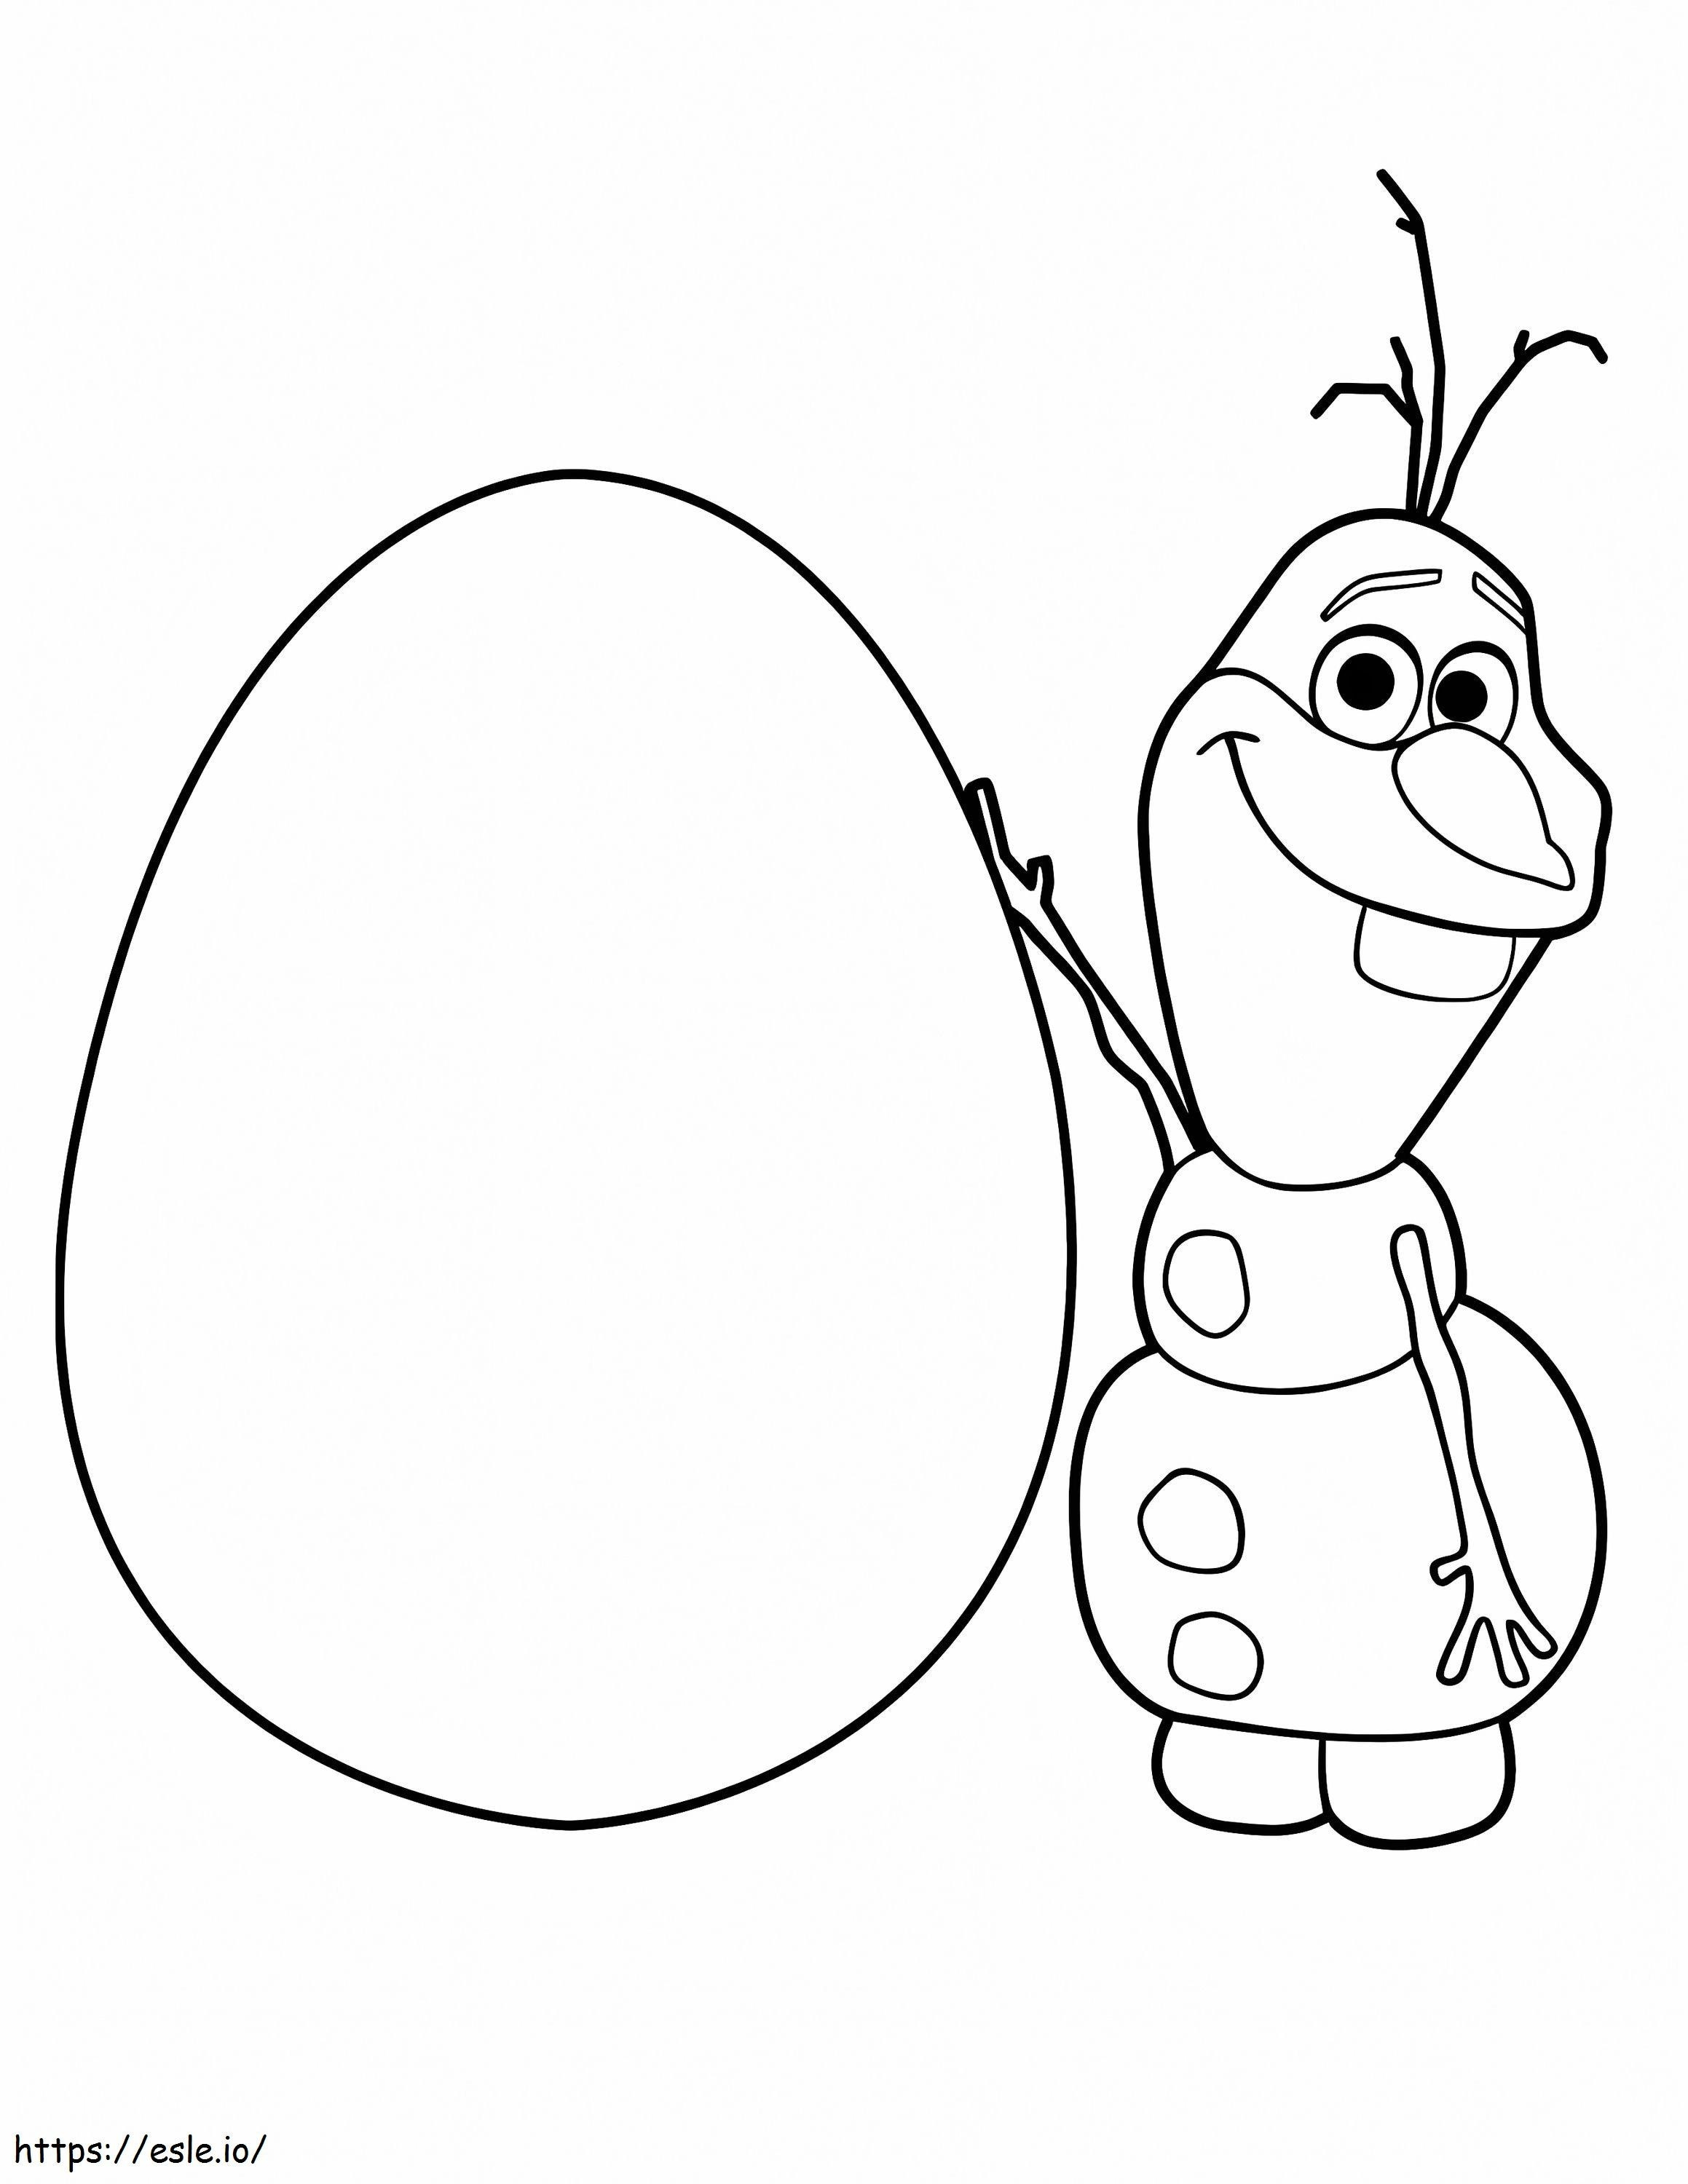 Olaf și ou de colorat